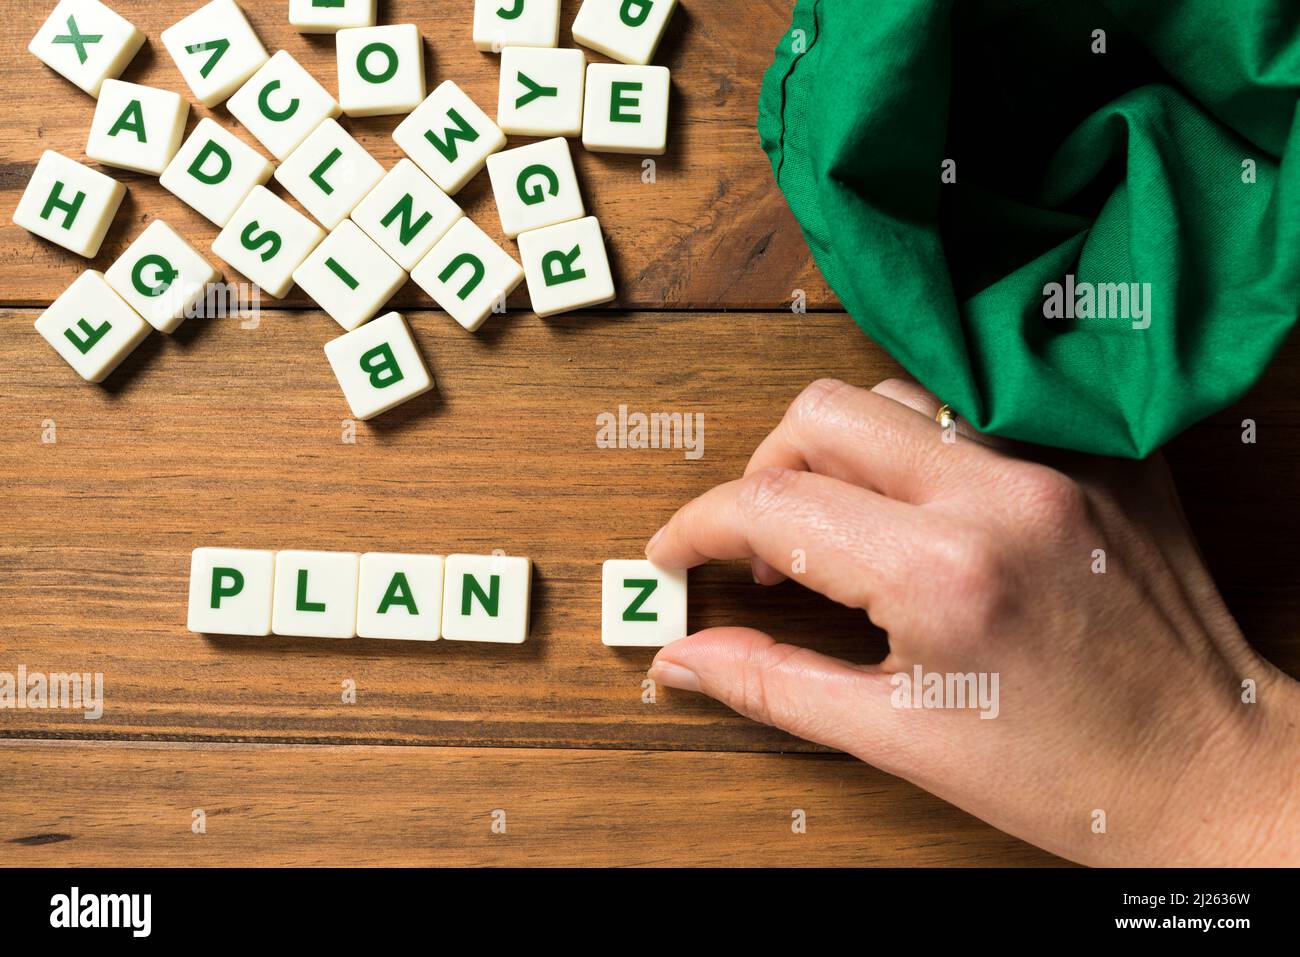 Eine Hand, die ein Stück mit dem Buchstaben Z neben dem WORTPLAN platziert. Ein leerer grüner Beutel und andere Stücke mit Buchstaben erscheinen verdrängt. Konzept der Planung Stockfoto